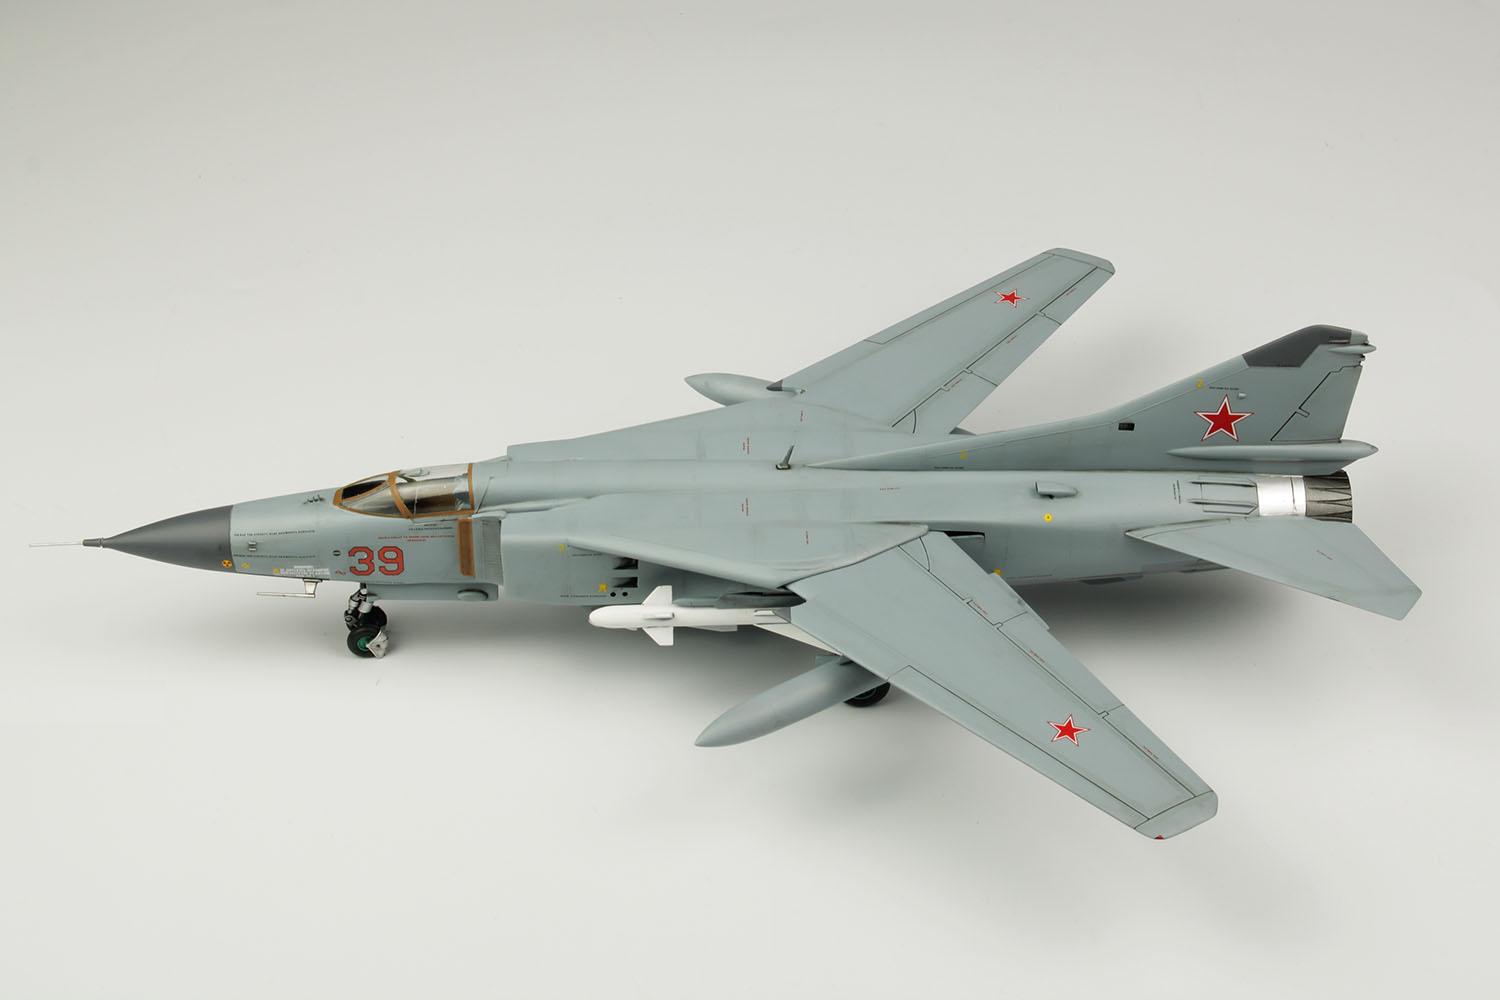 1/48 Soviet Air Force Fighter MiG-23MF Flogger B